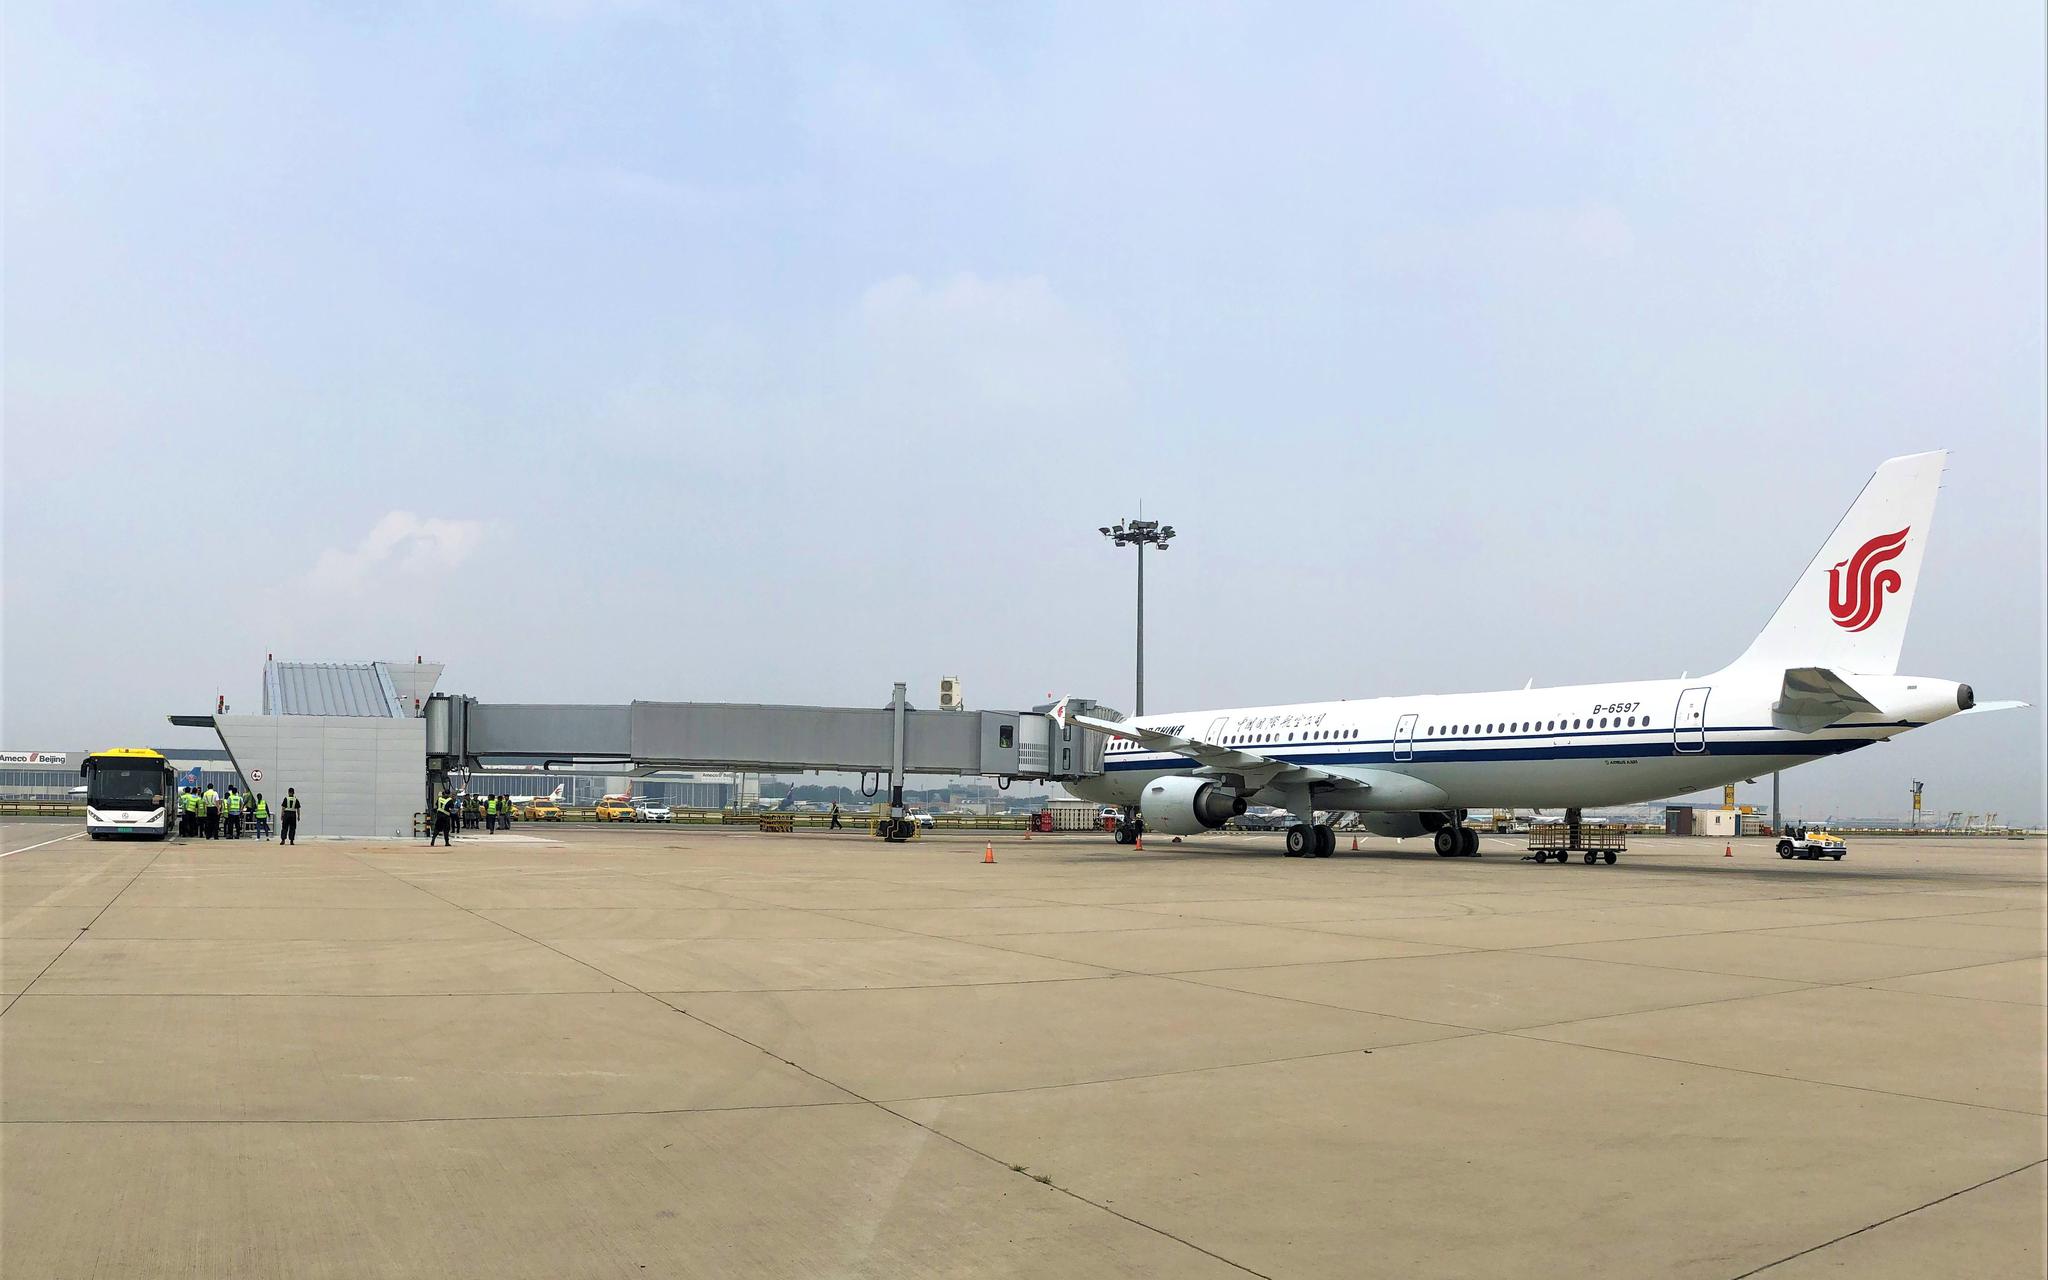 暑期旅游旺季至 南航波音787宽体客机在武汉上线_长江云 - 湖北网络广播电视台官方网站